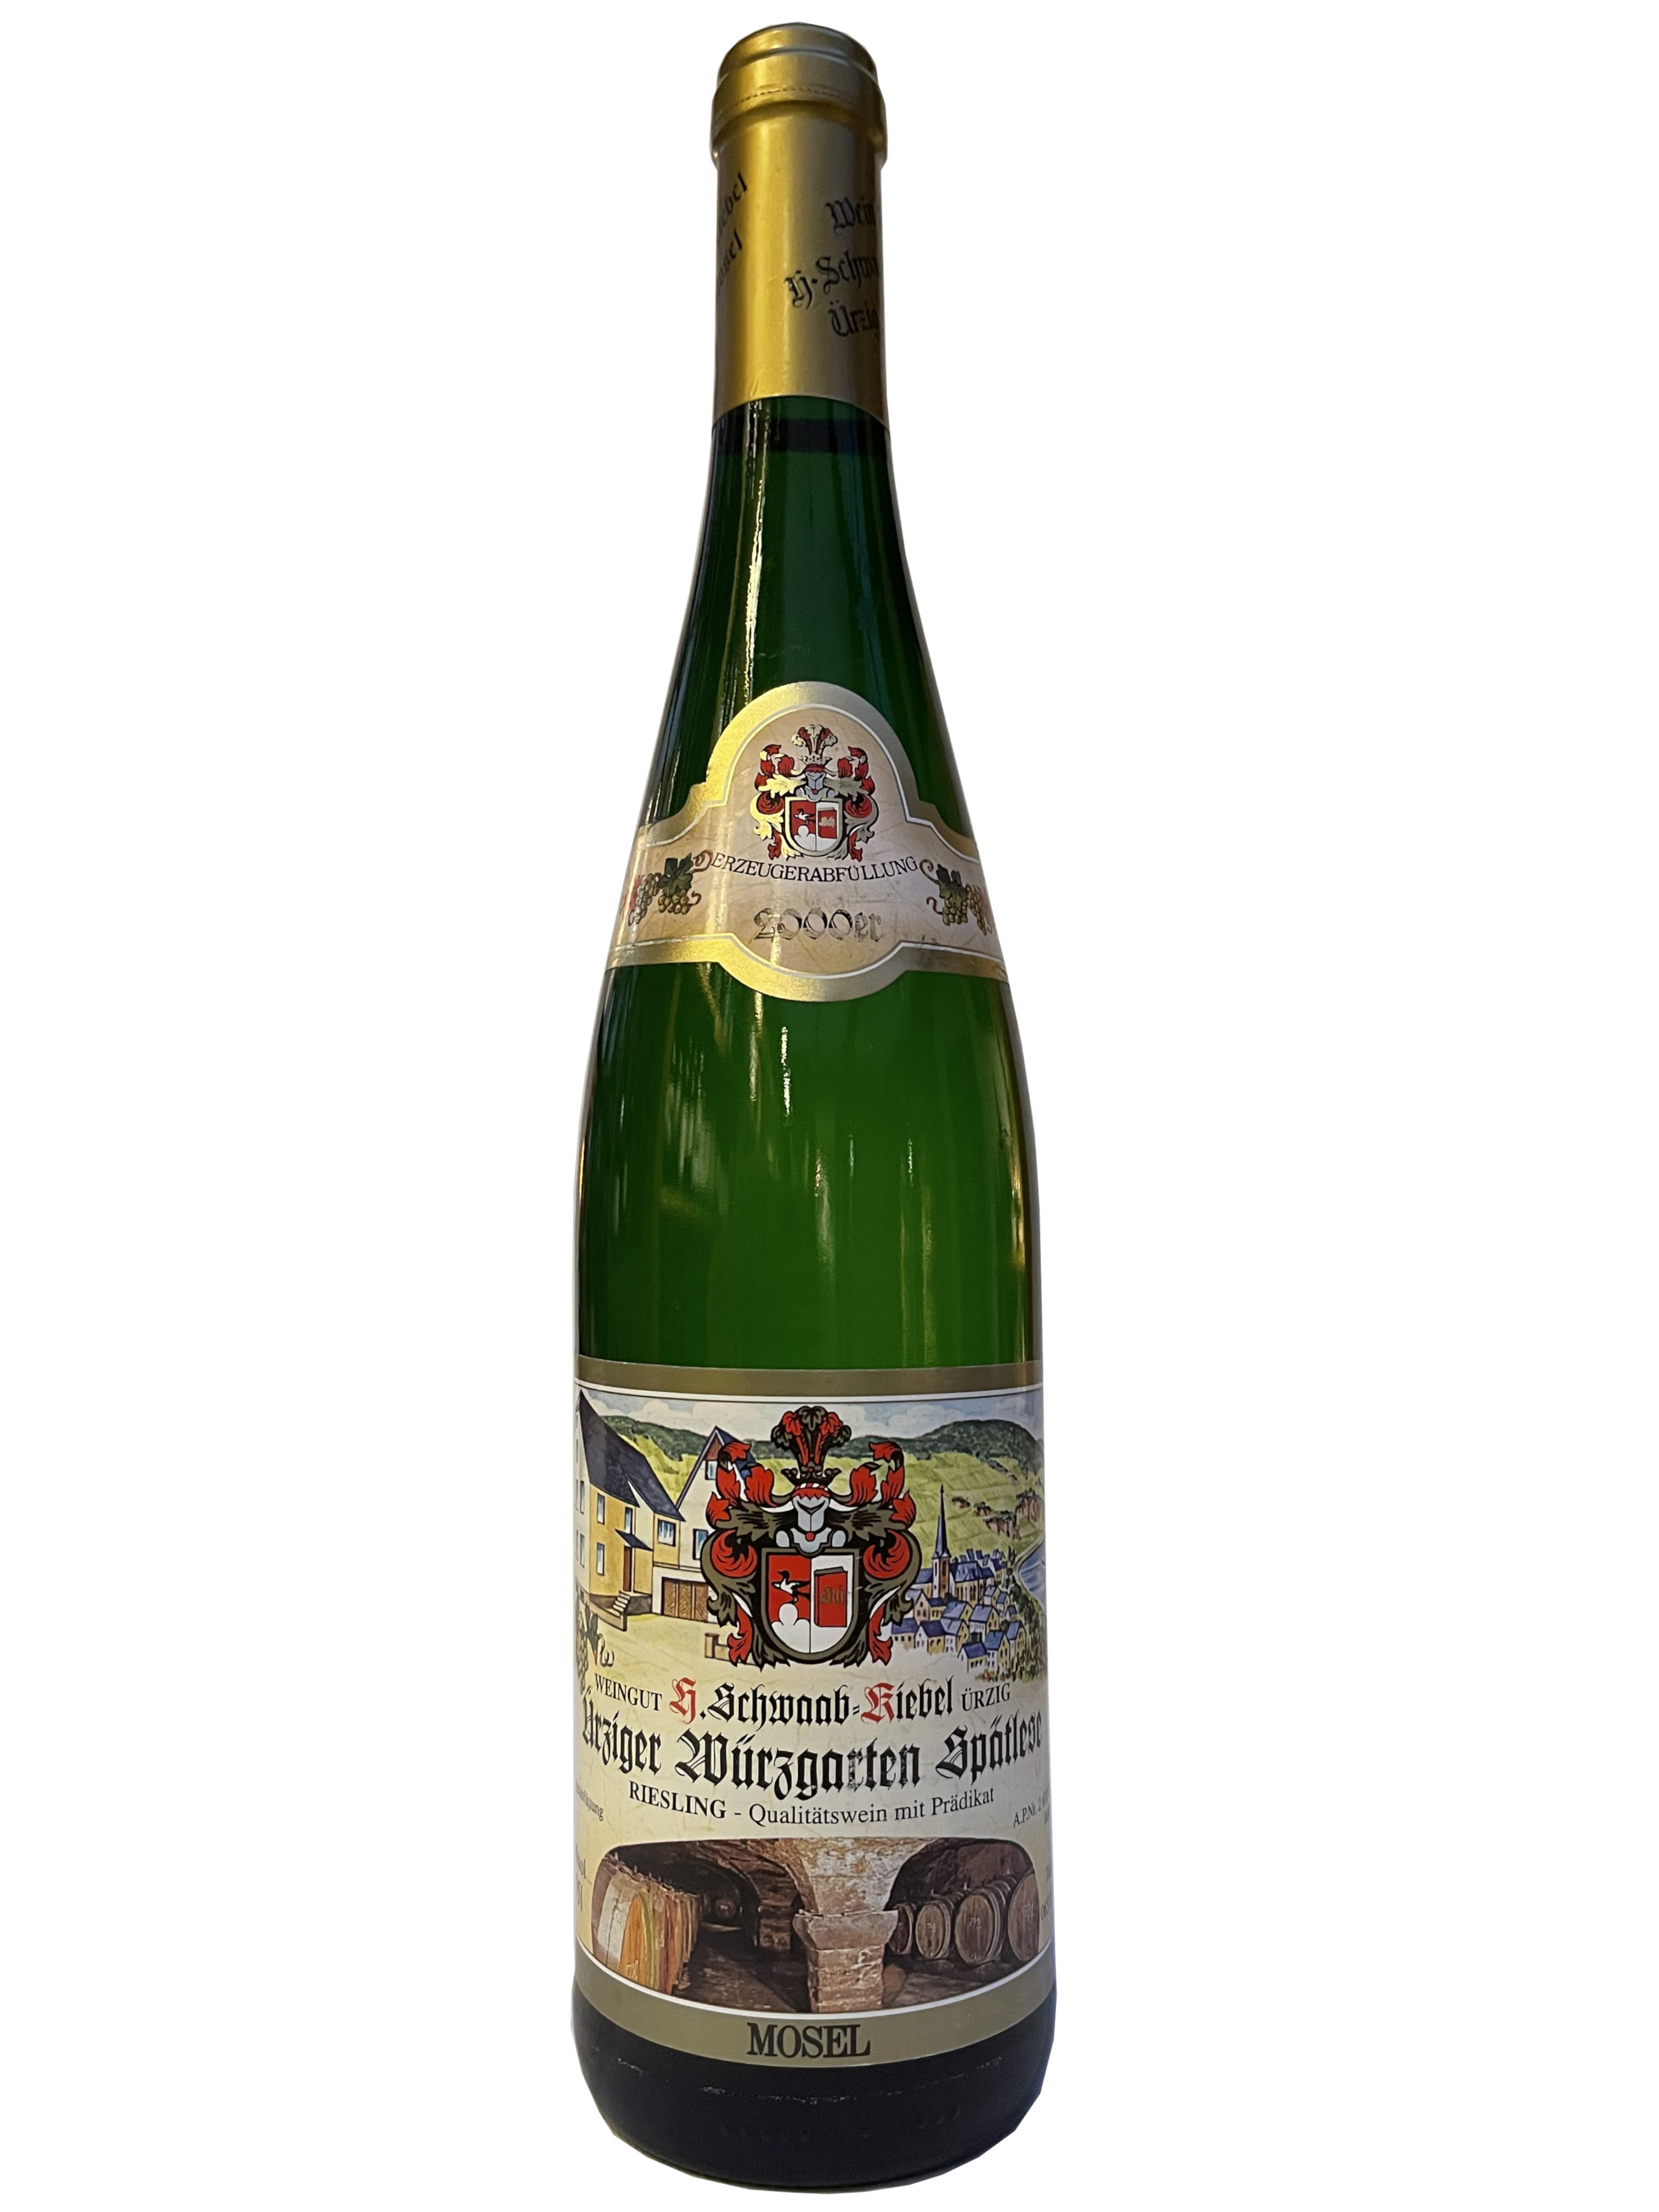 Weingut H. Schwaab Kiebel Ürziger Würzgarten Spätlese 2000